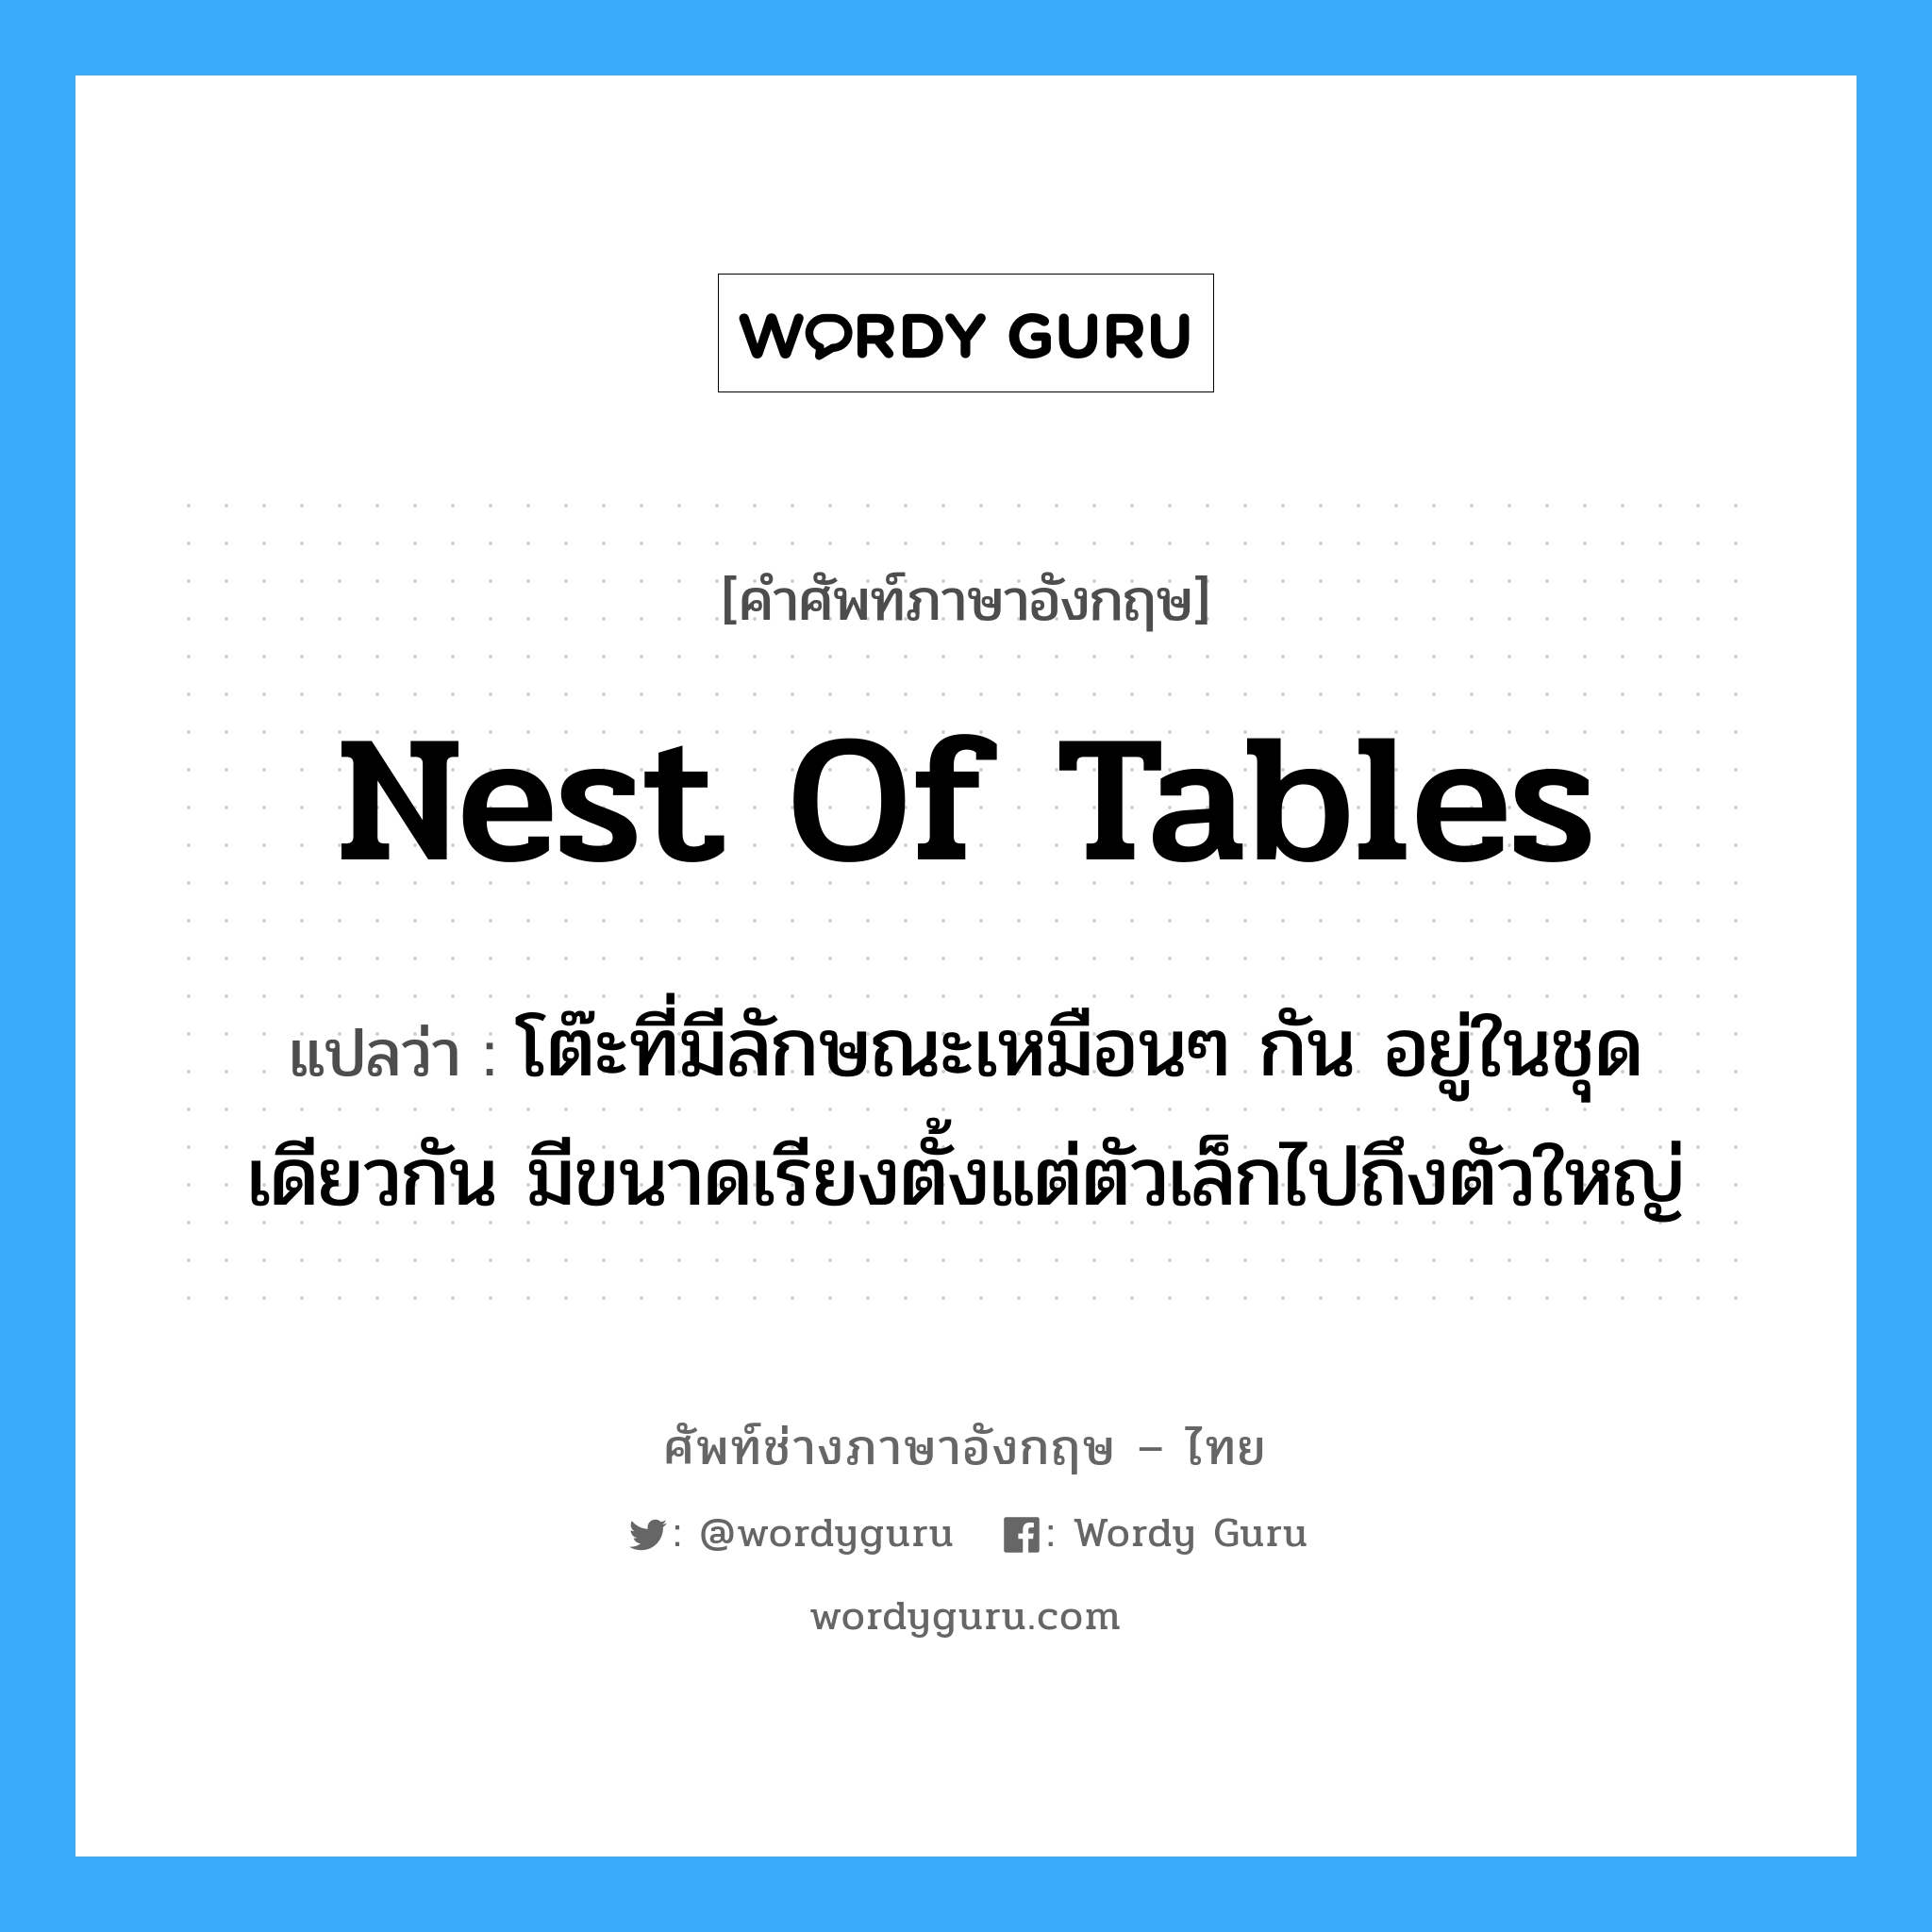 nest of tables แปลว่า?, คำศัพท์ช่างภาษาอังกฤษ - ไทย nest of tables คำศัพท์ภาษาอังกฤษ nest of tables แปลว่า โต๊ะที่มีลักษณะเหมือนๆ กัน อยู่ในชุดเดียวกัน มีขนาดเรียงตั้งแต่ตัวเล็กไปถึงตัวใหญ่